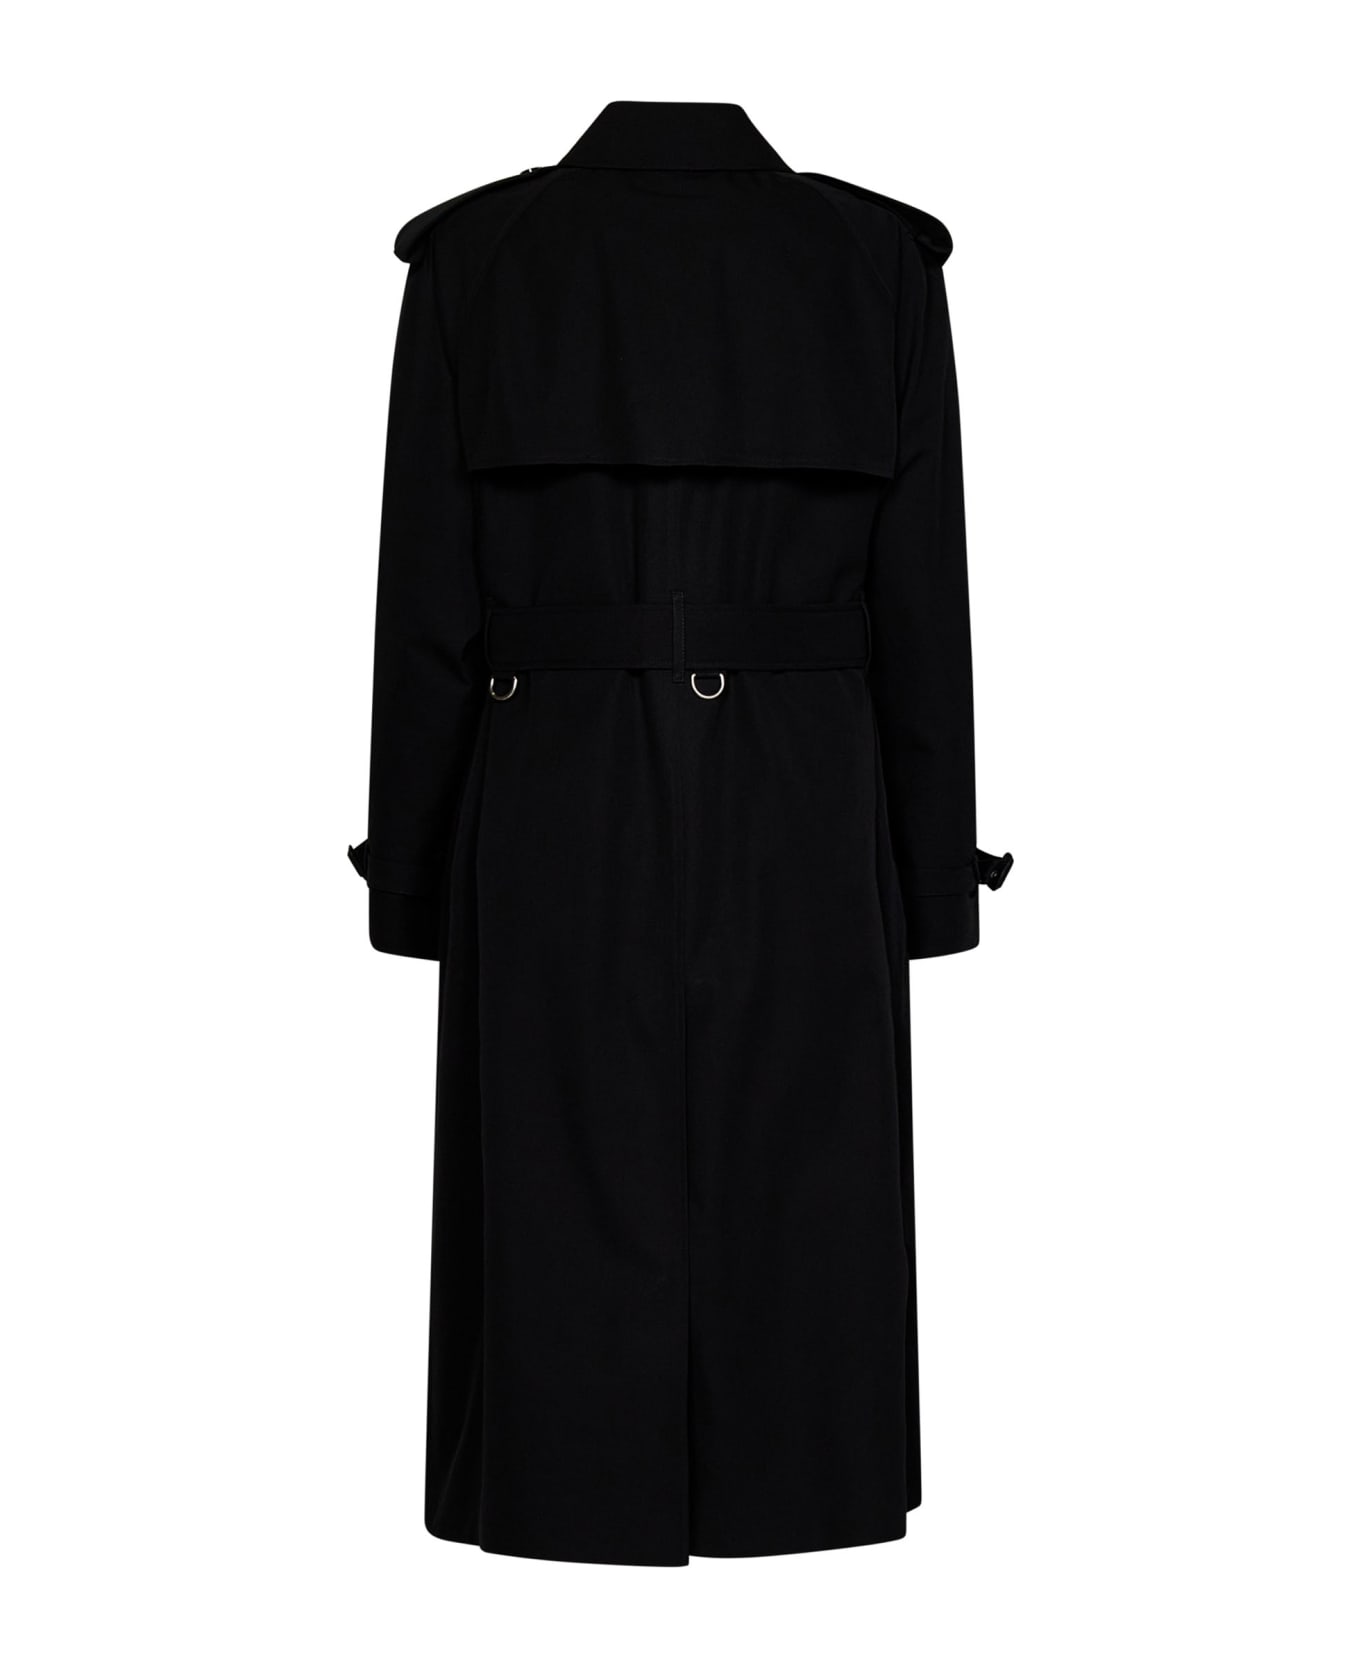 Burberry Trench Coat - Black ジャケット